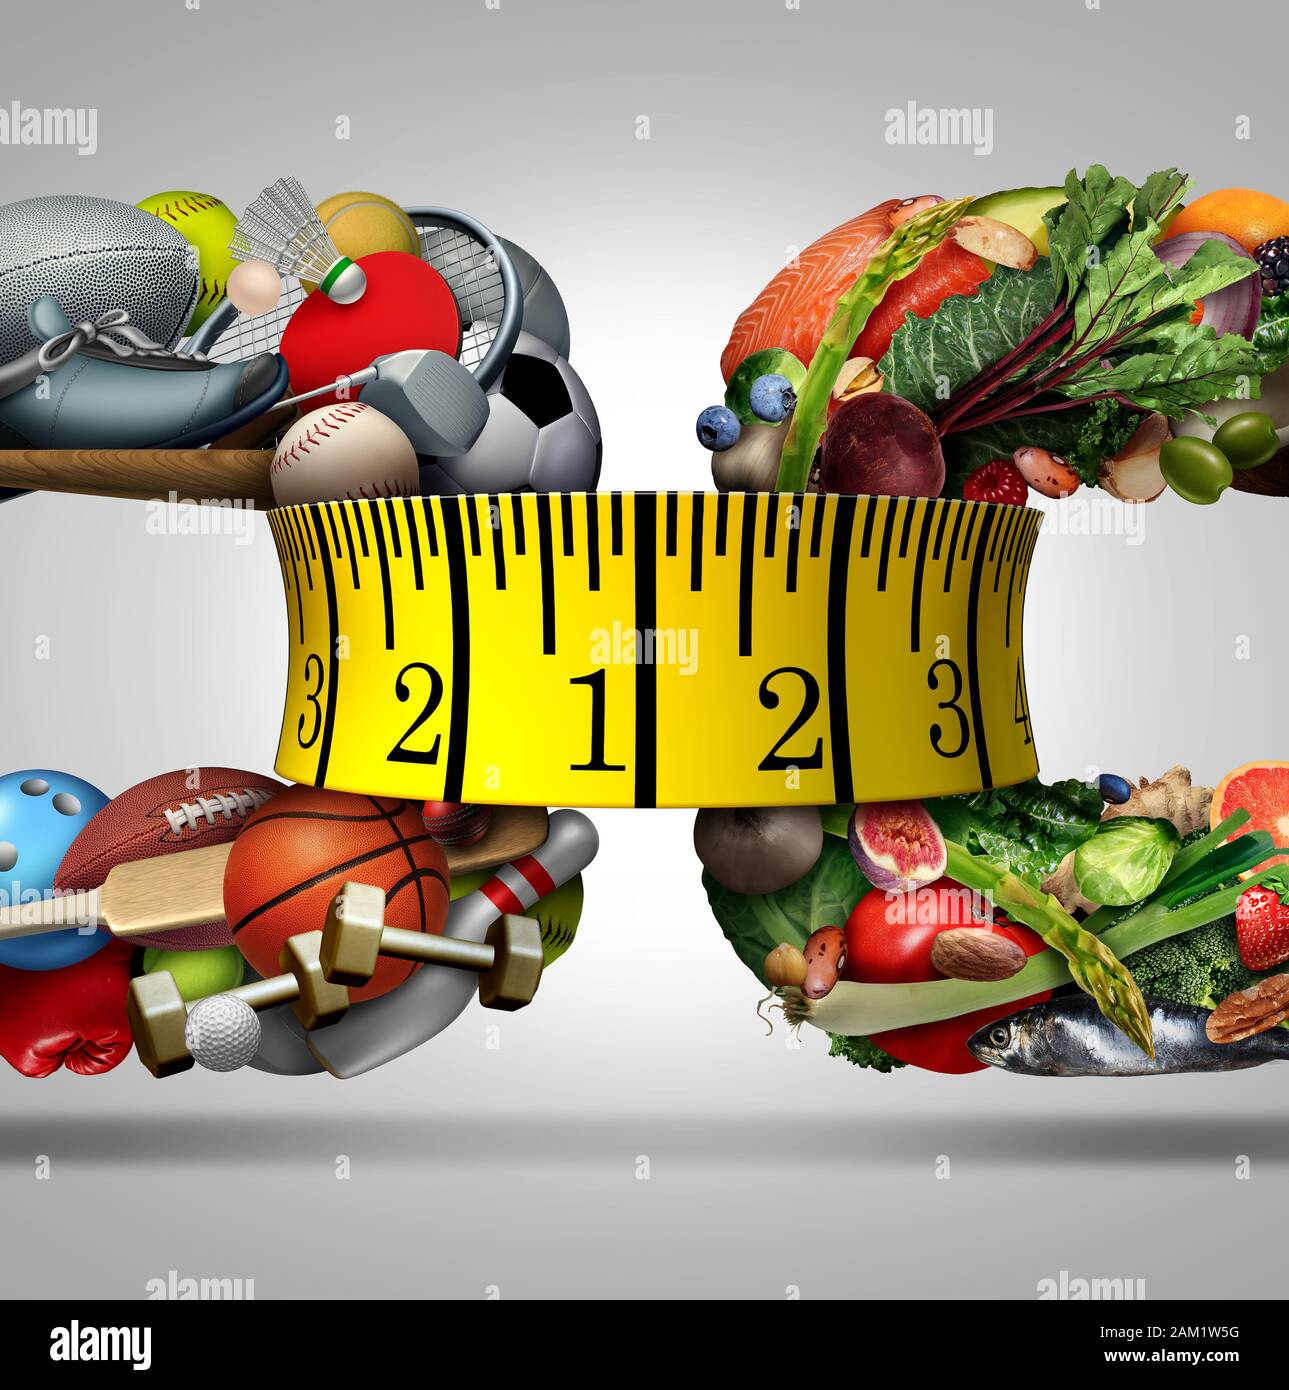 Sport und Ernährung als Gesundheit und Fitness Concept mit einem Maßband als Wellness lifestyle Symbol für Abwägung mit gesunden Lebensmitteln. Stockfoto